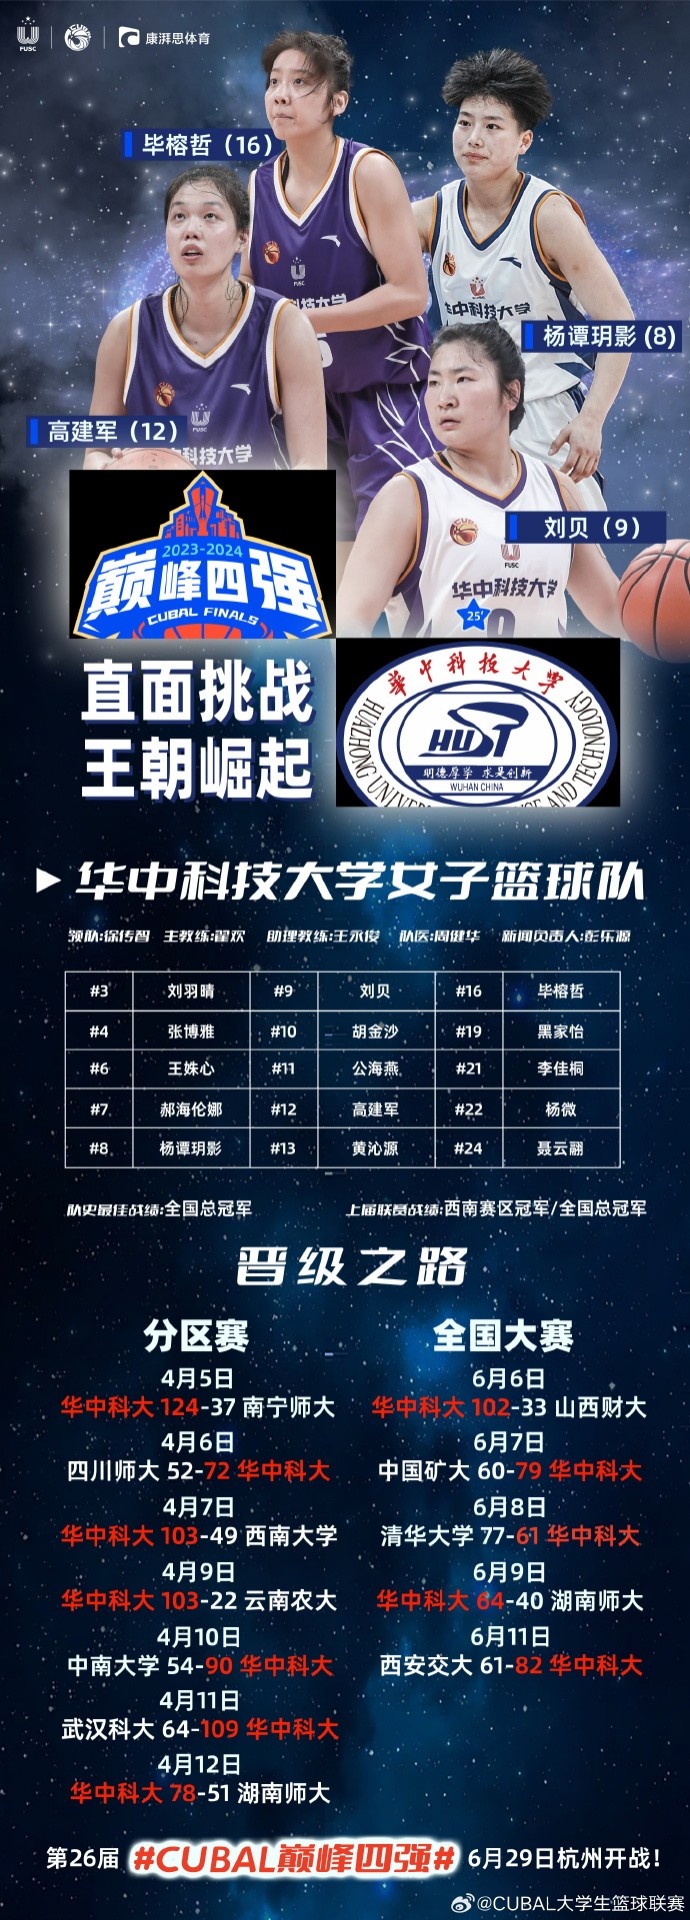 CUBAL巅峰四强巡礼-华中科技大学女子篮球队